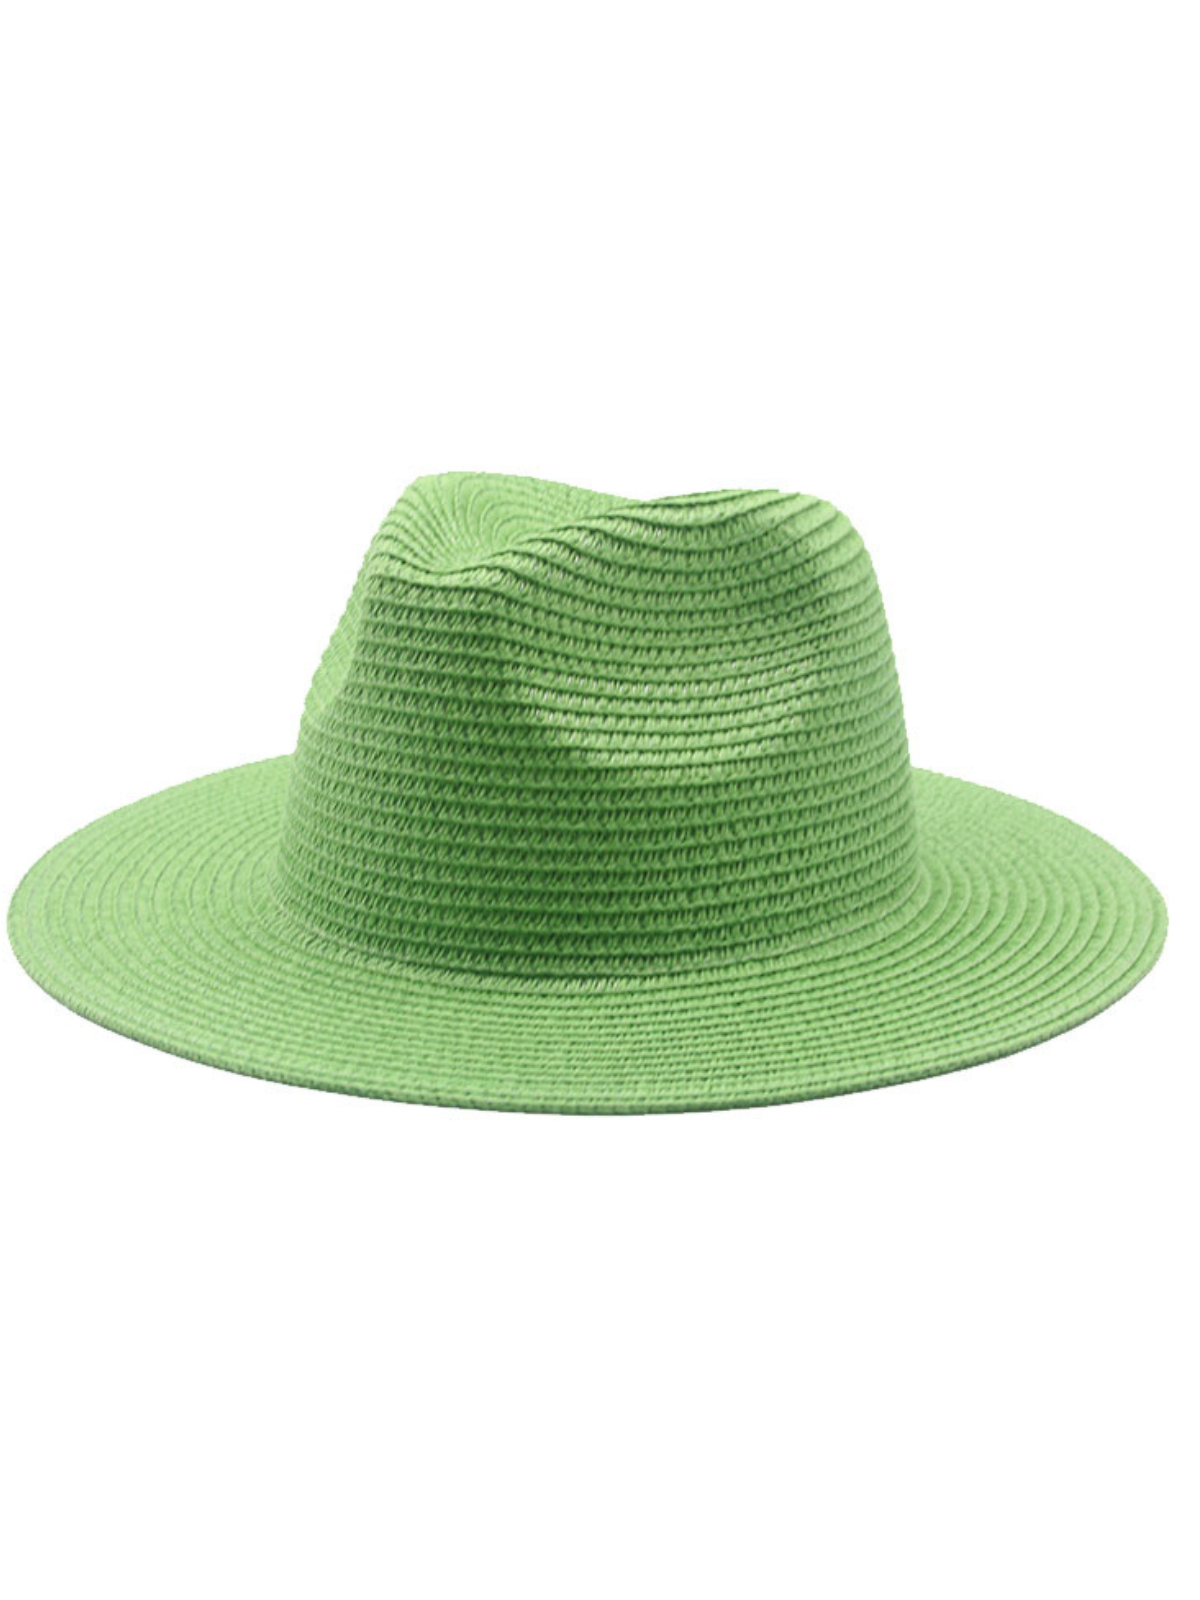 Not Your Basic Light Green Sun Hat